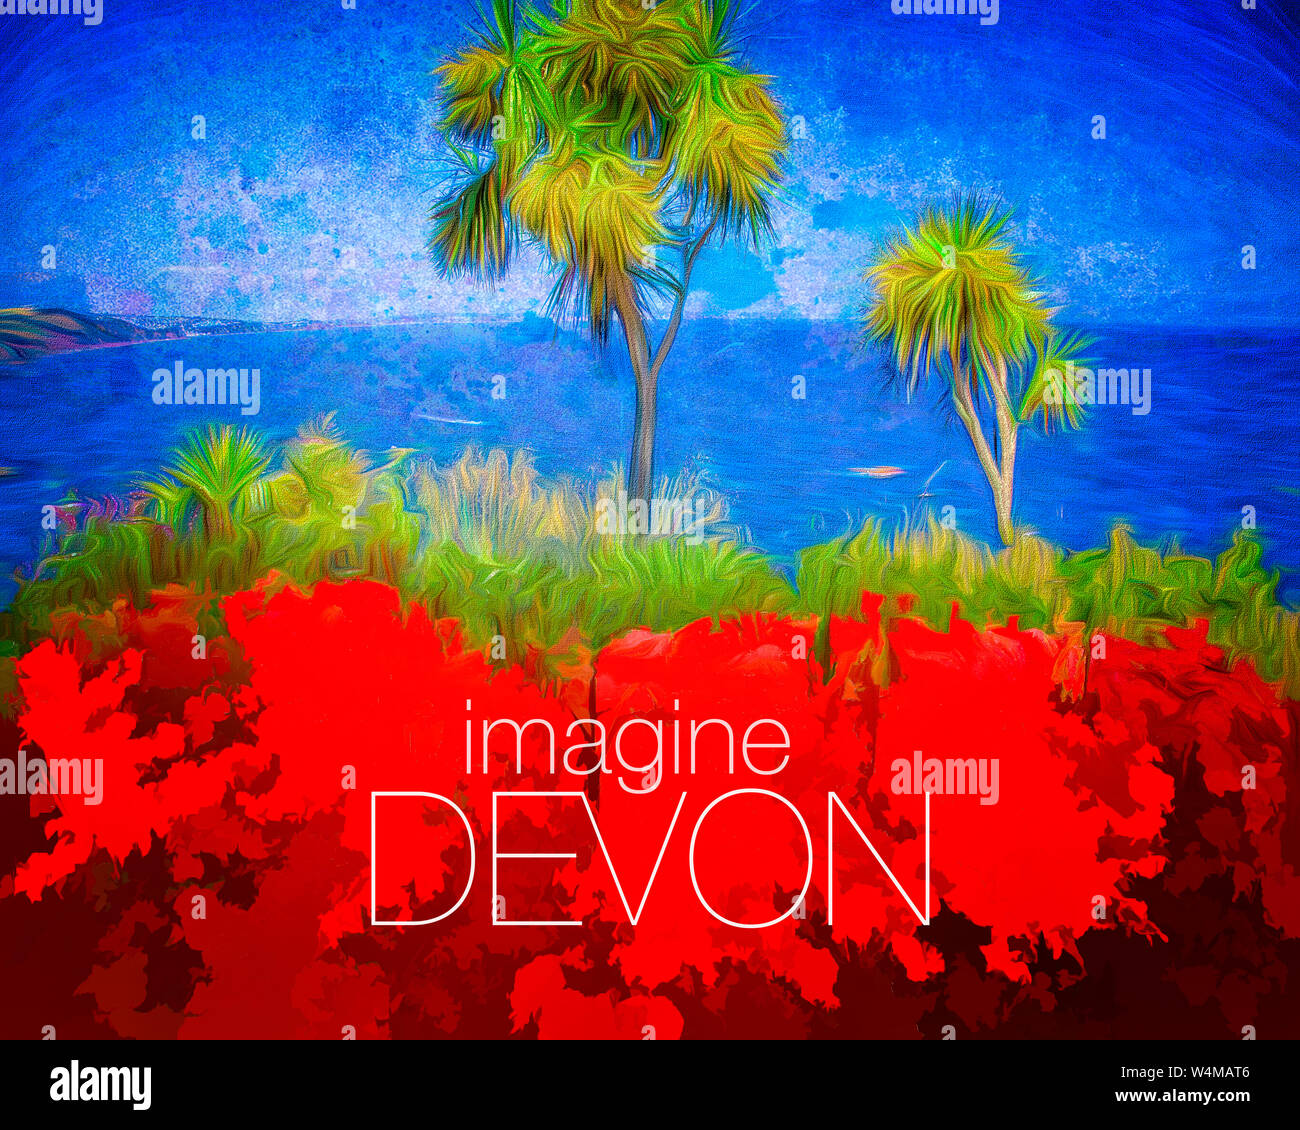 Les concept de l'affiche : imaginer, Devon Babbacombe (Devon, Grande Bretagne) Banque D'Images